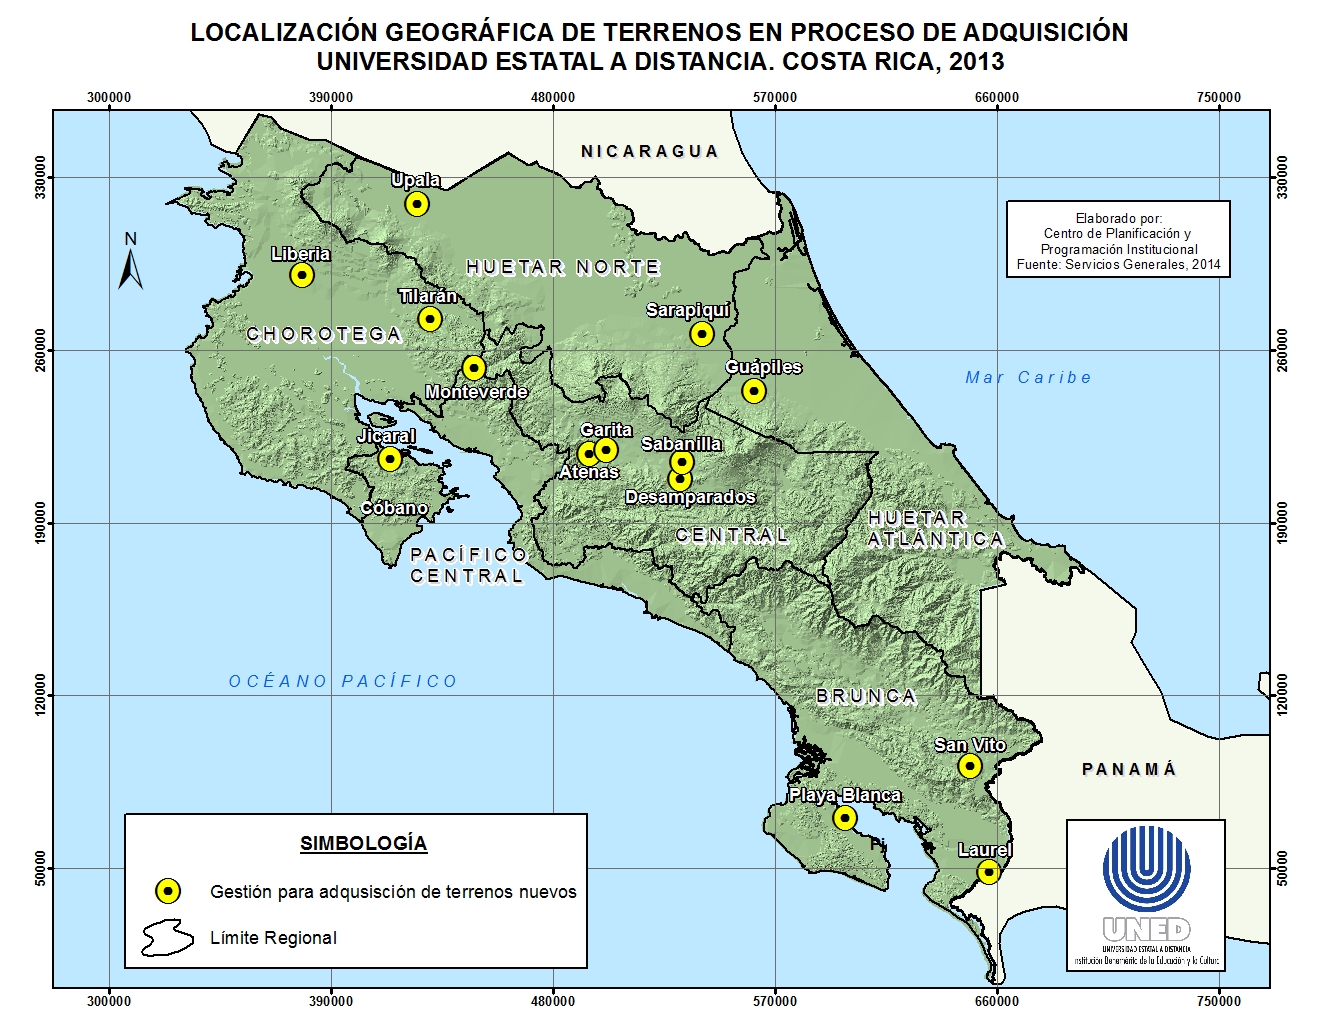 Localización geografica de terrenos en proceso de adquisión UNED Costa Rica 2013